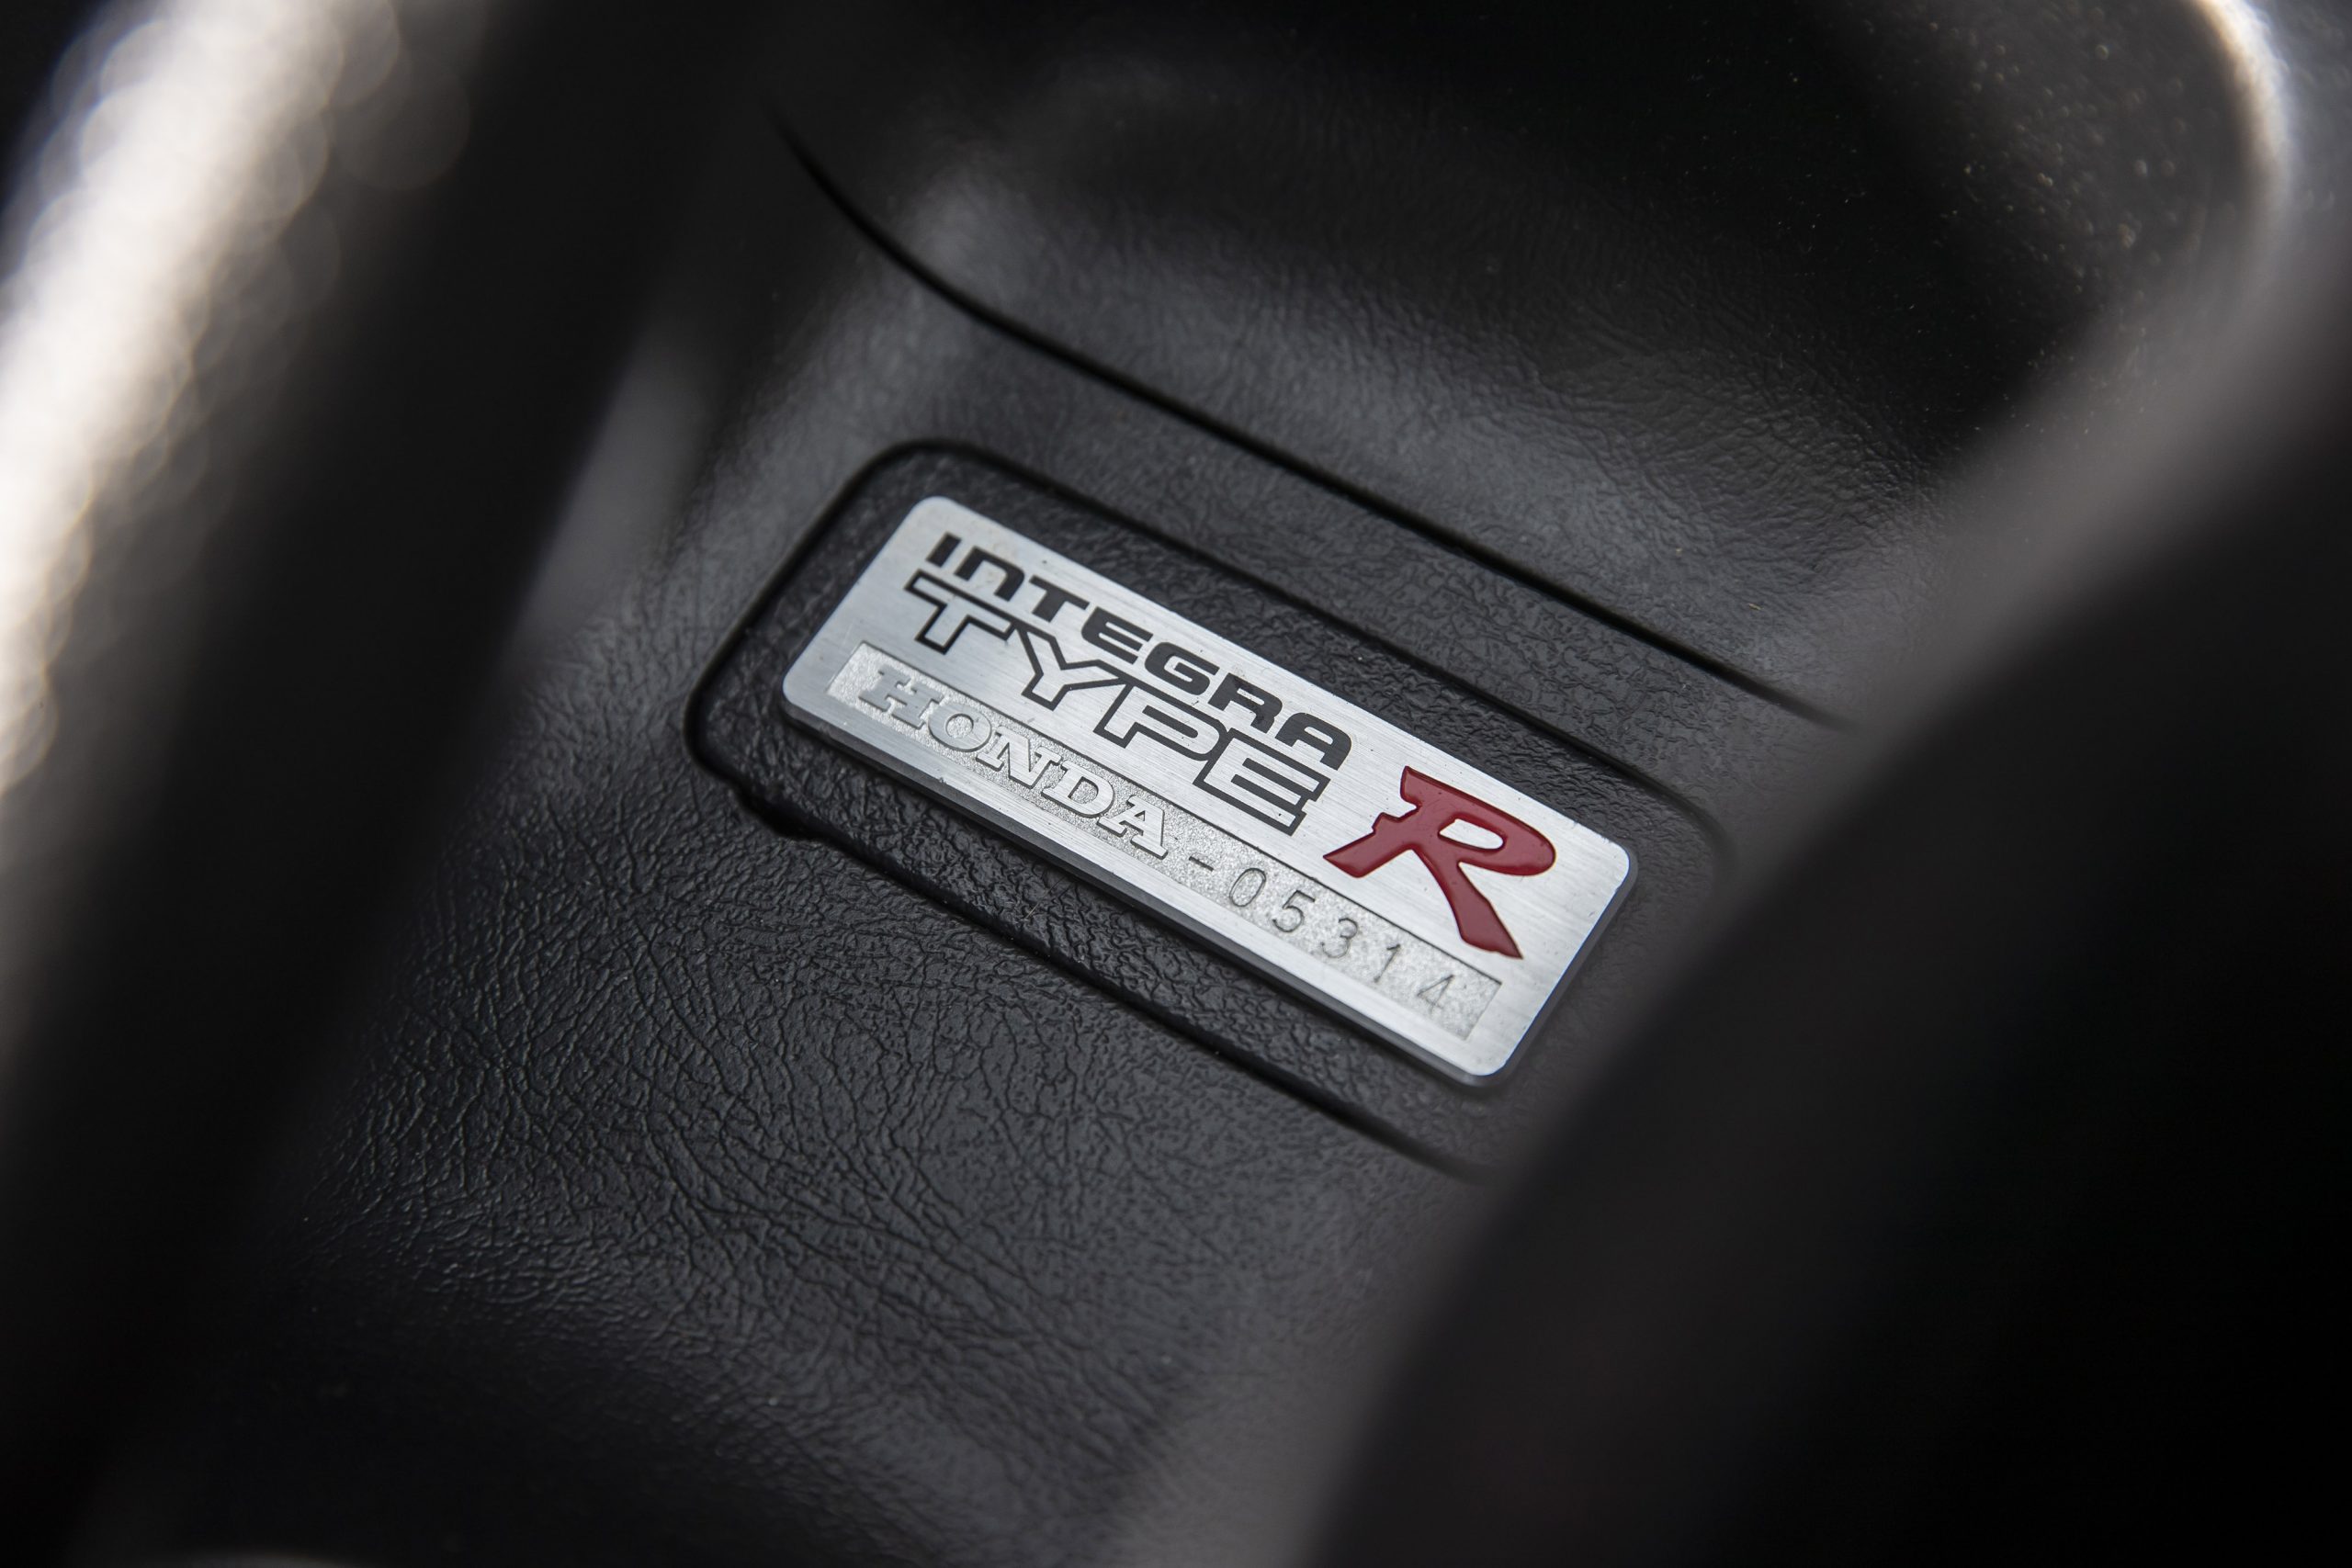 Honda Integra Type-R build plaque